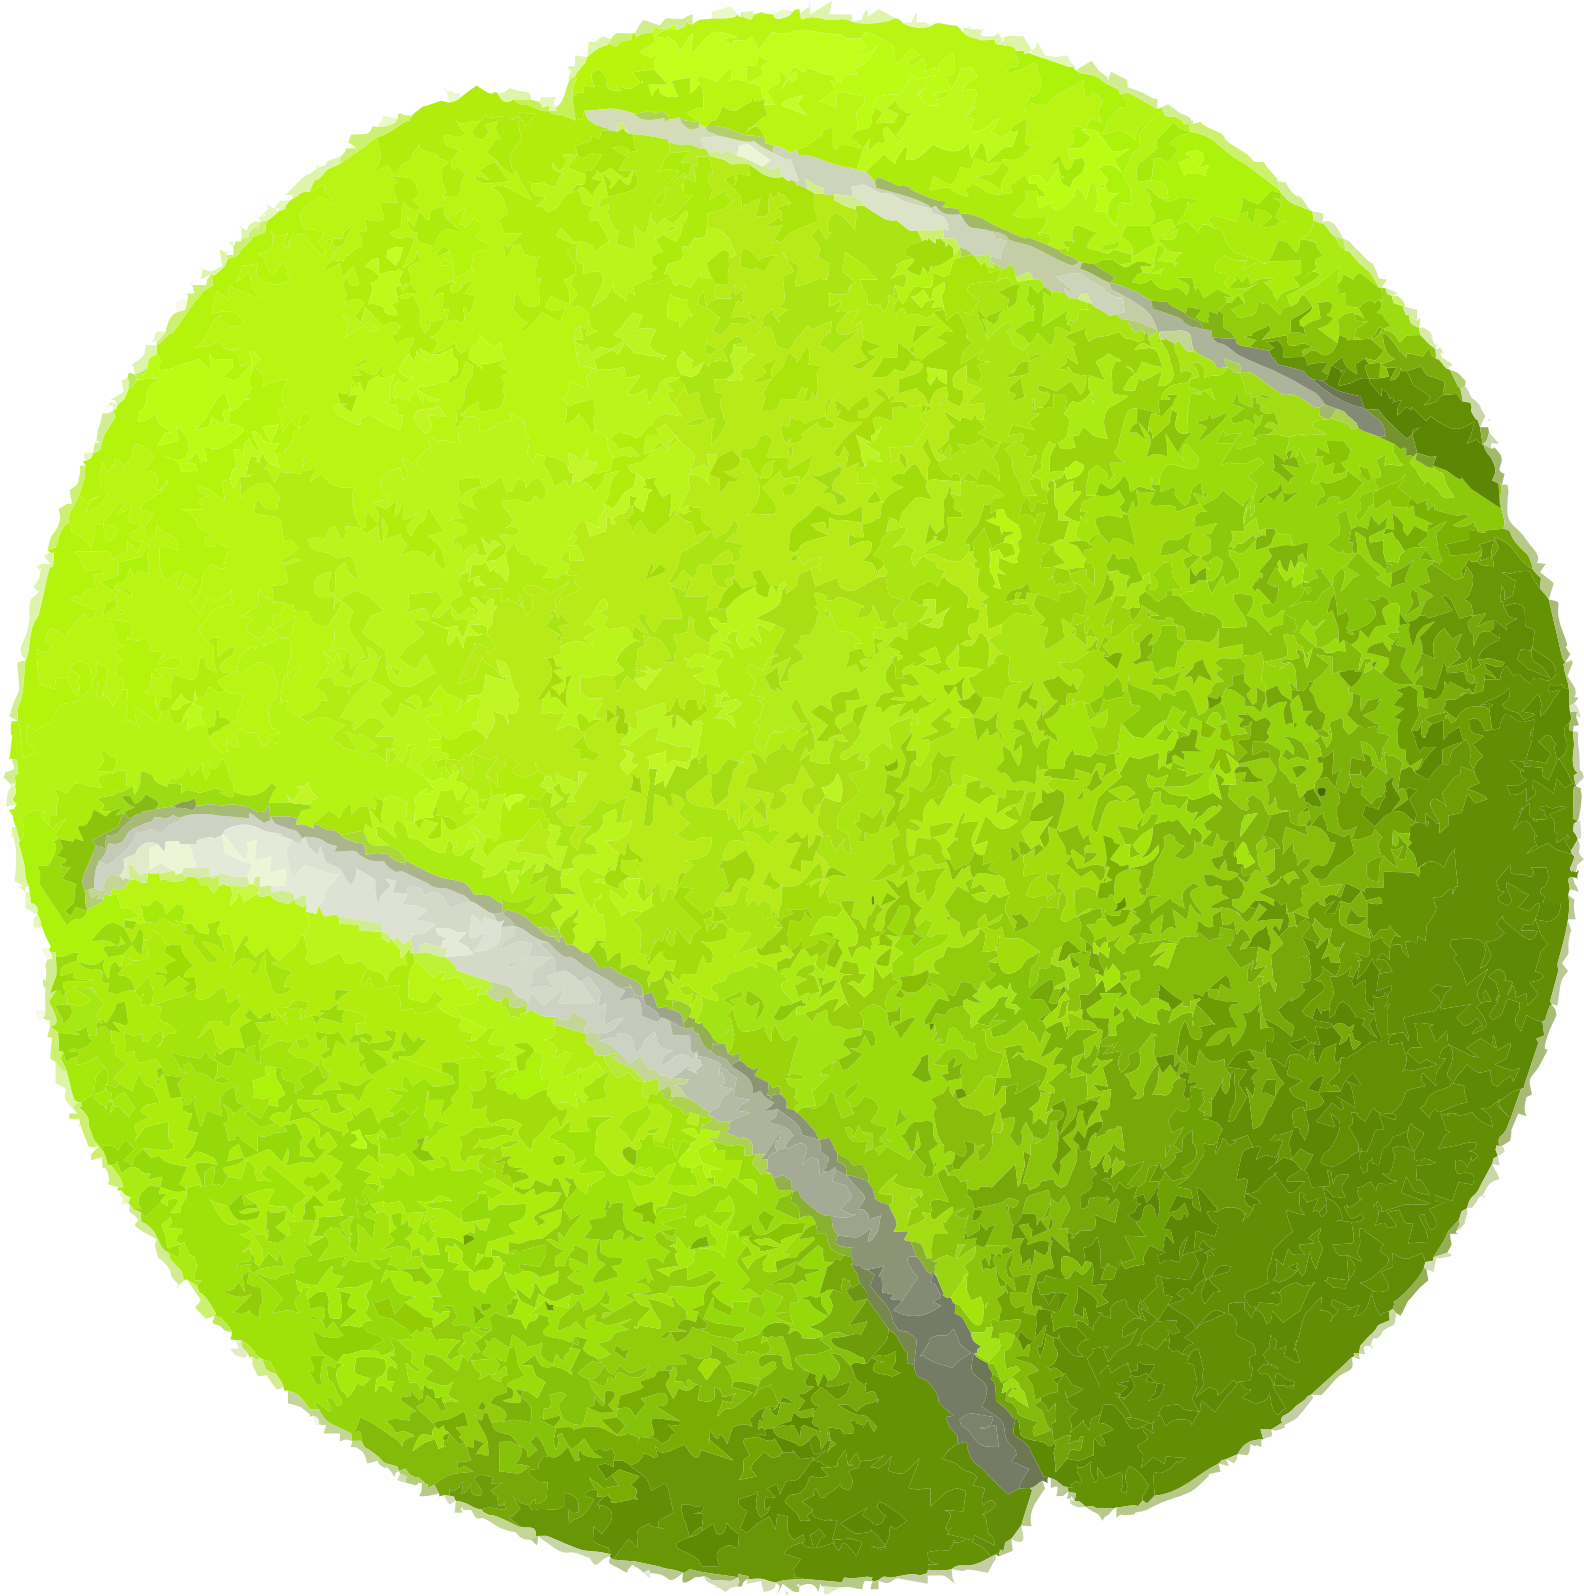 Immagine del PNG della palla da tennis